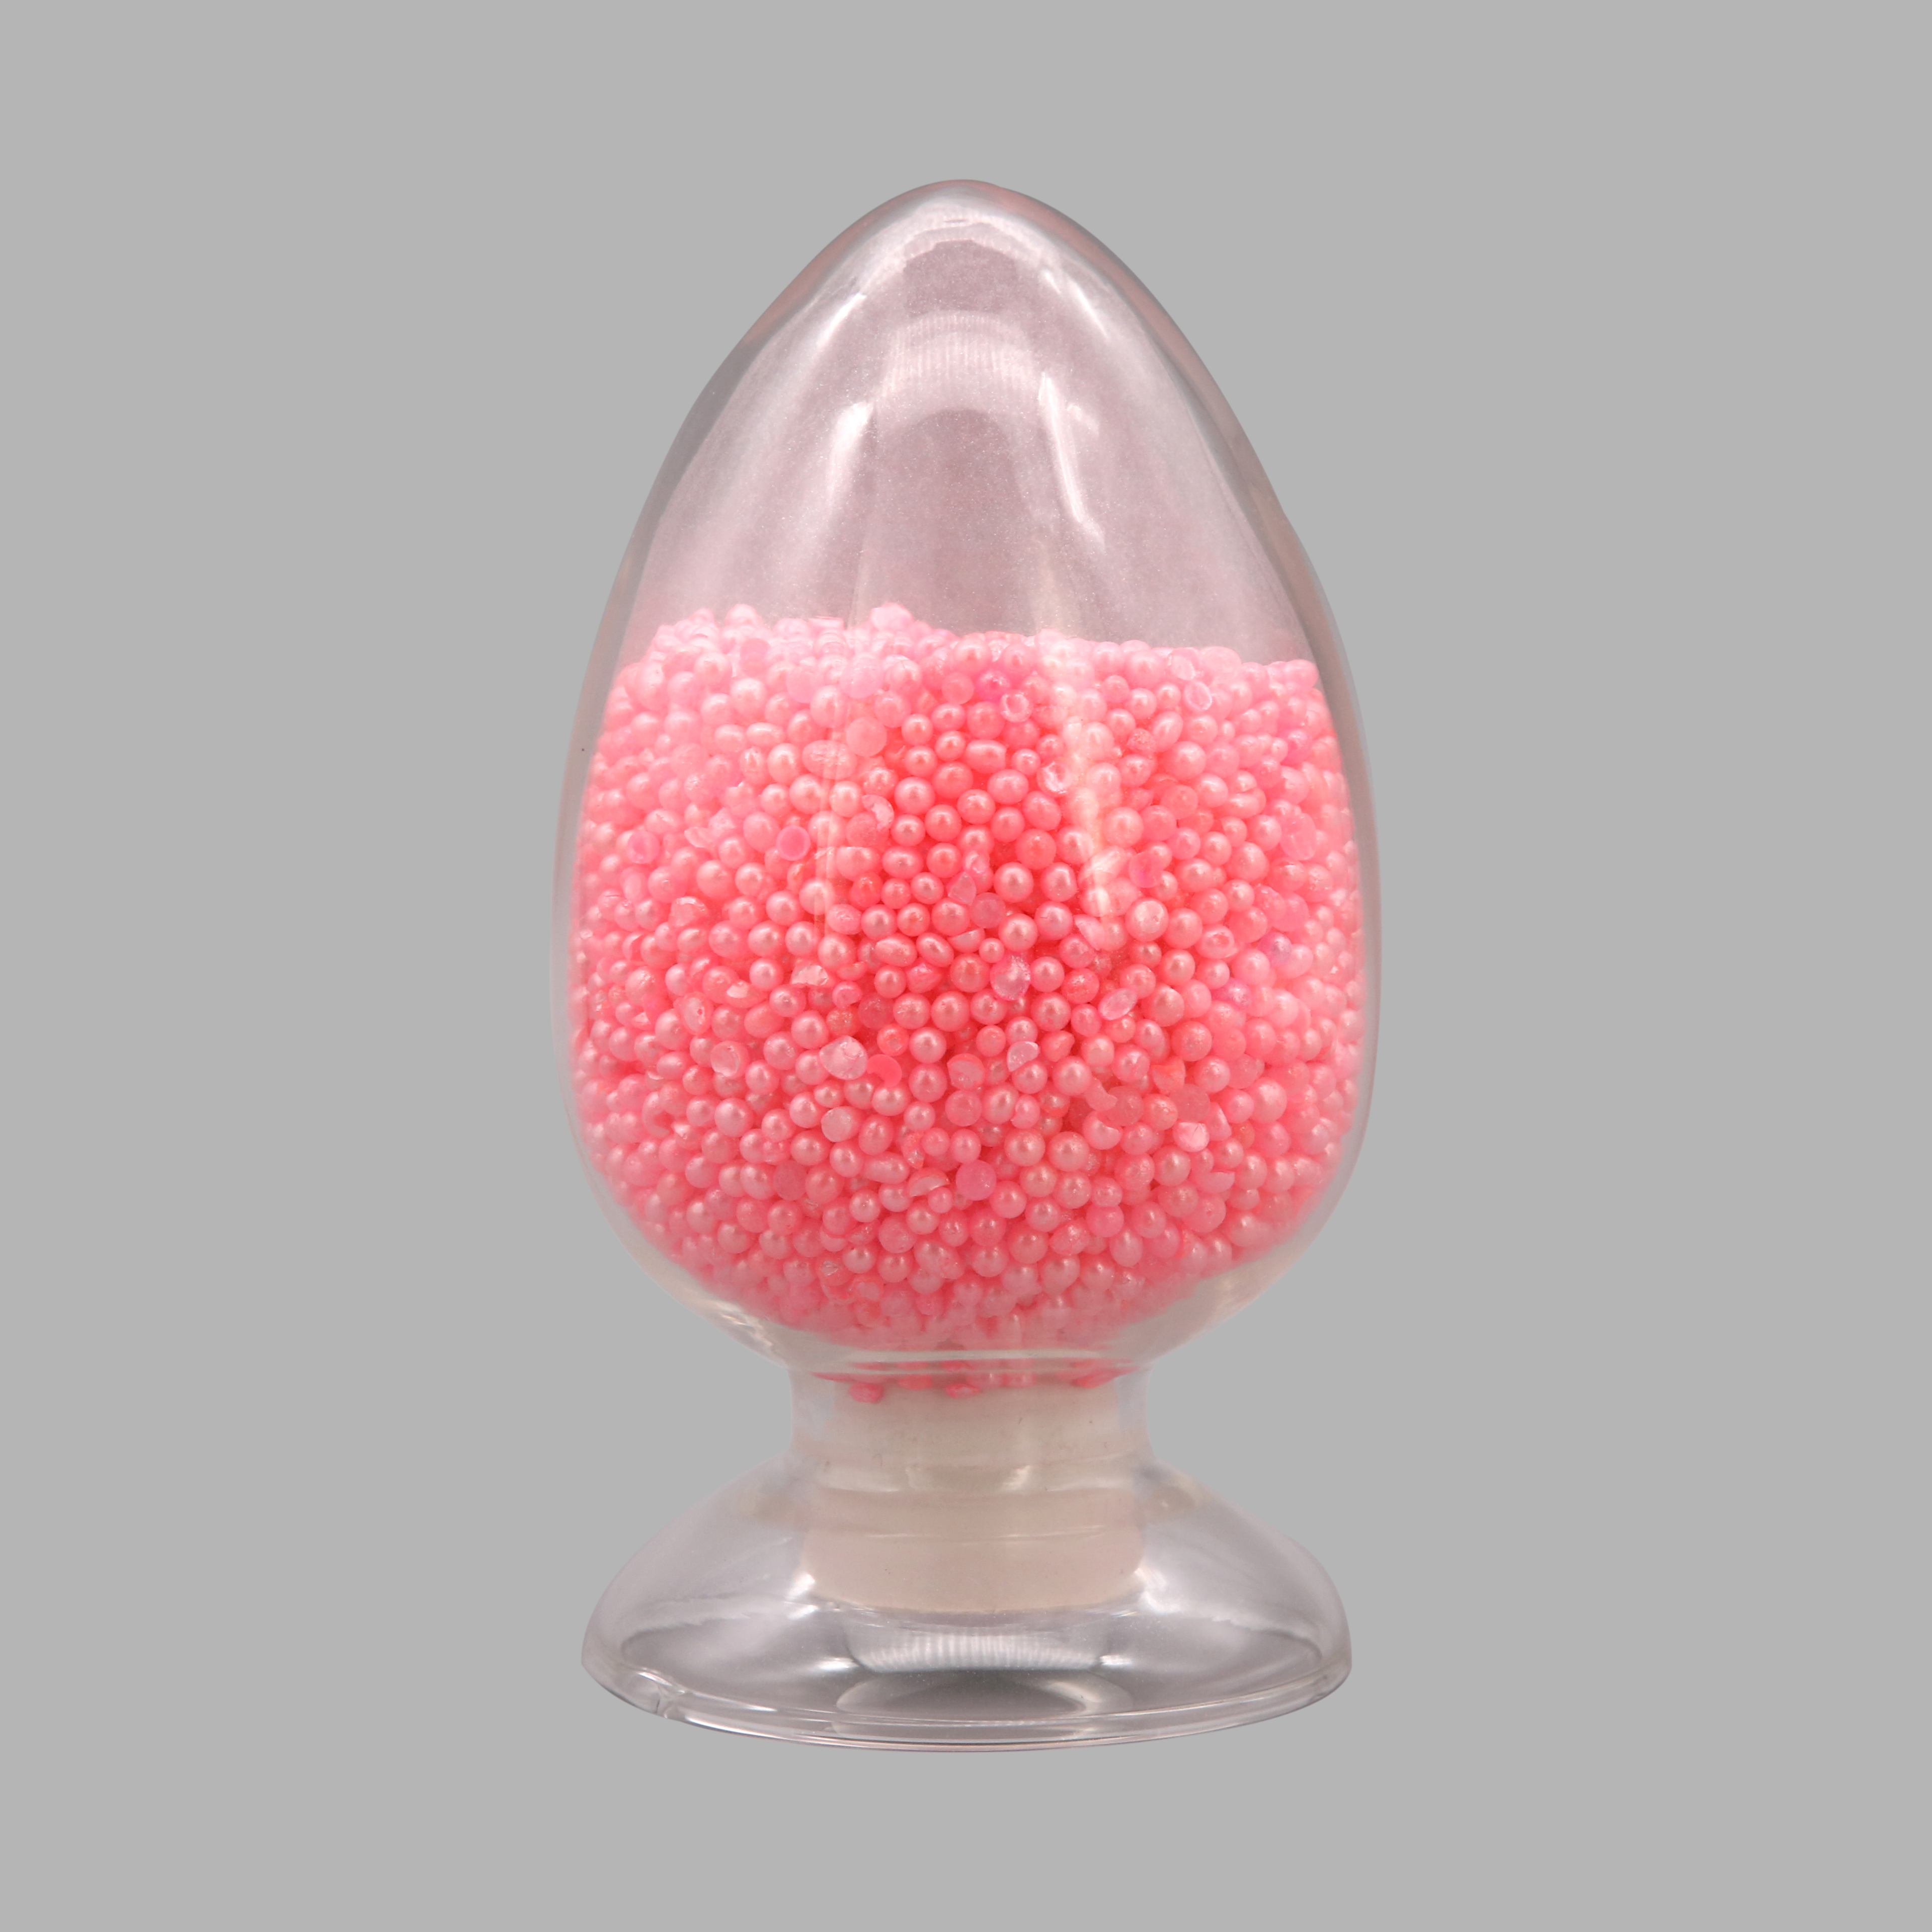 Fragrant Silica gel-2